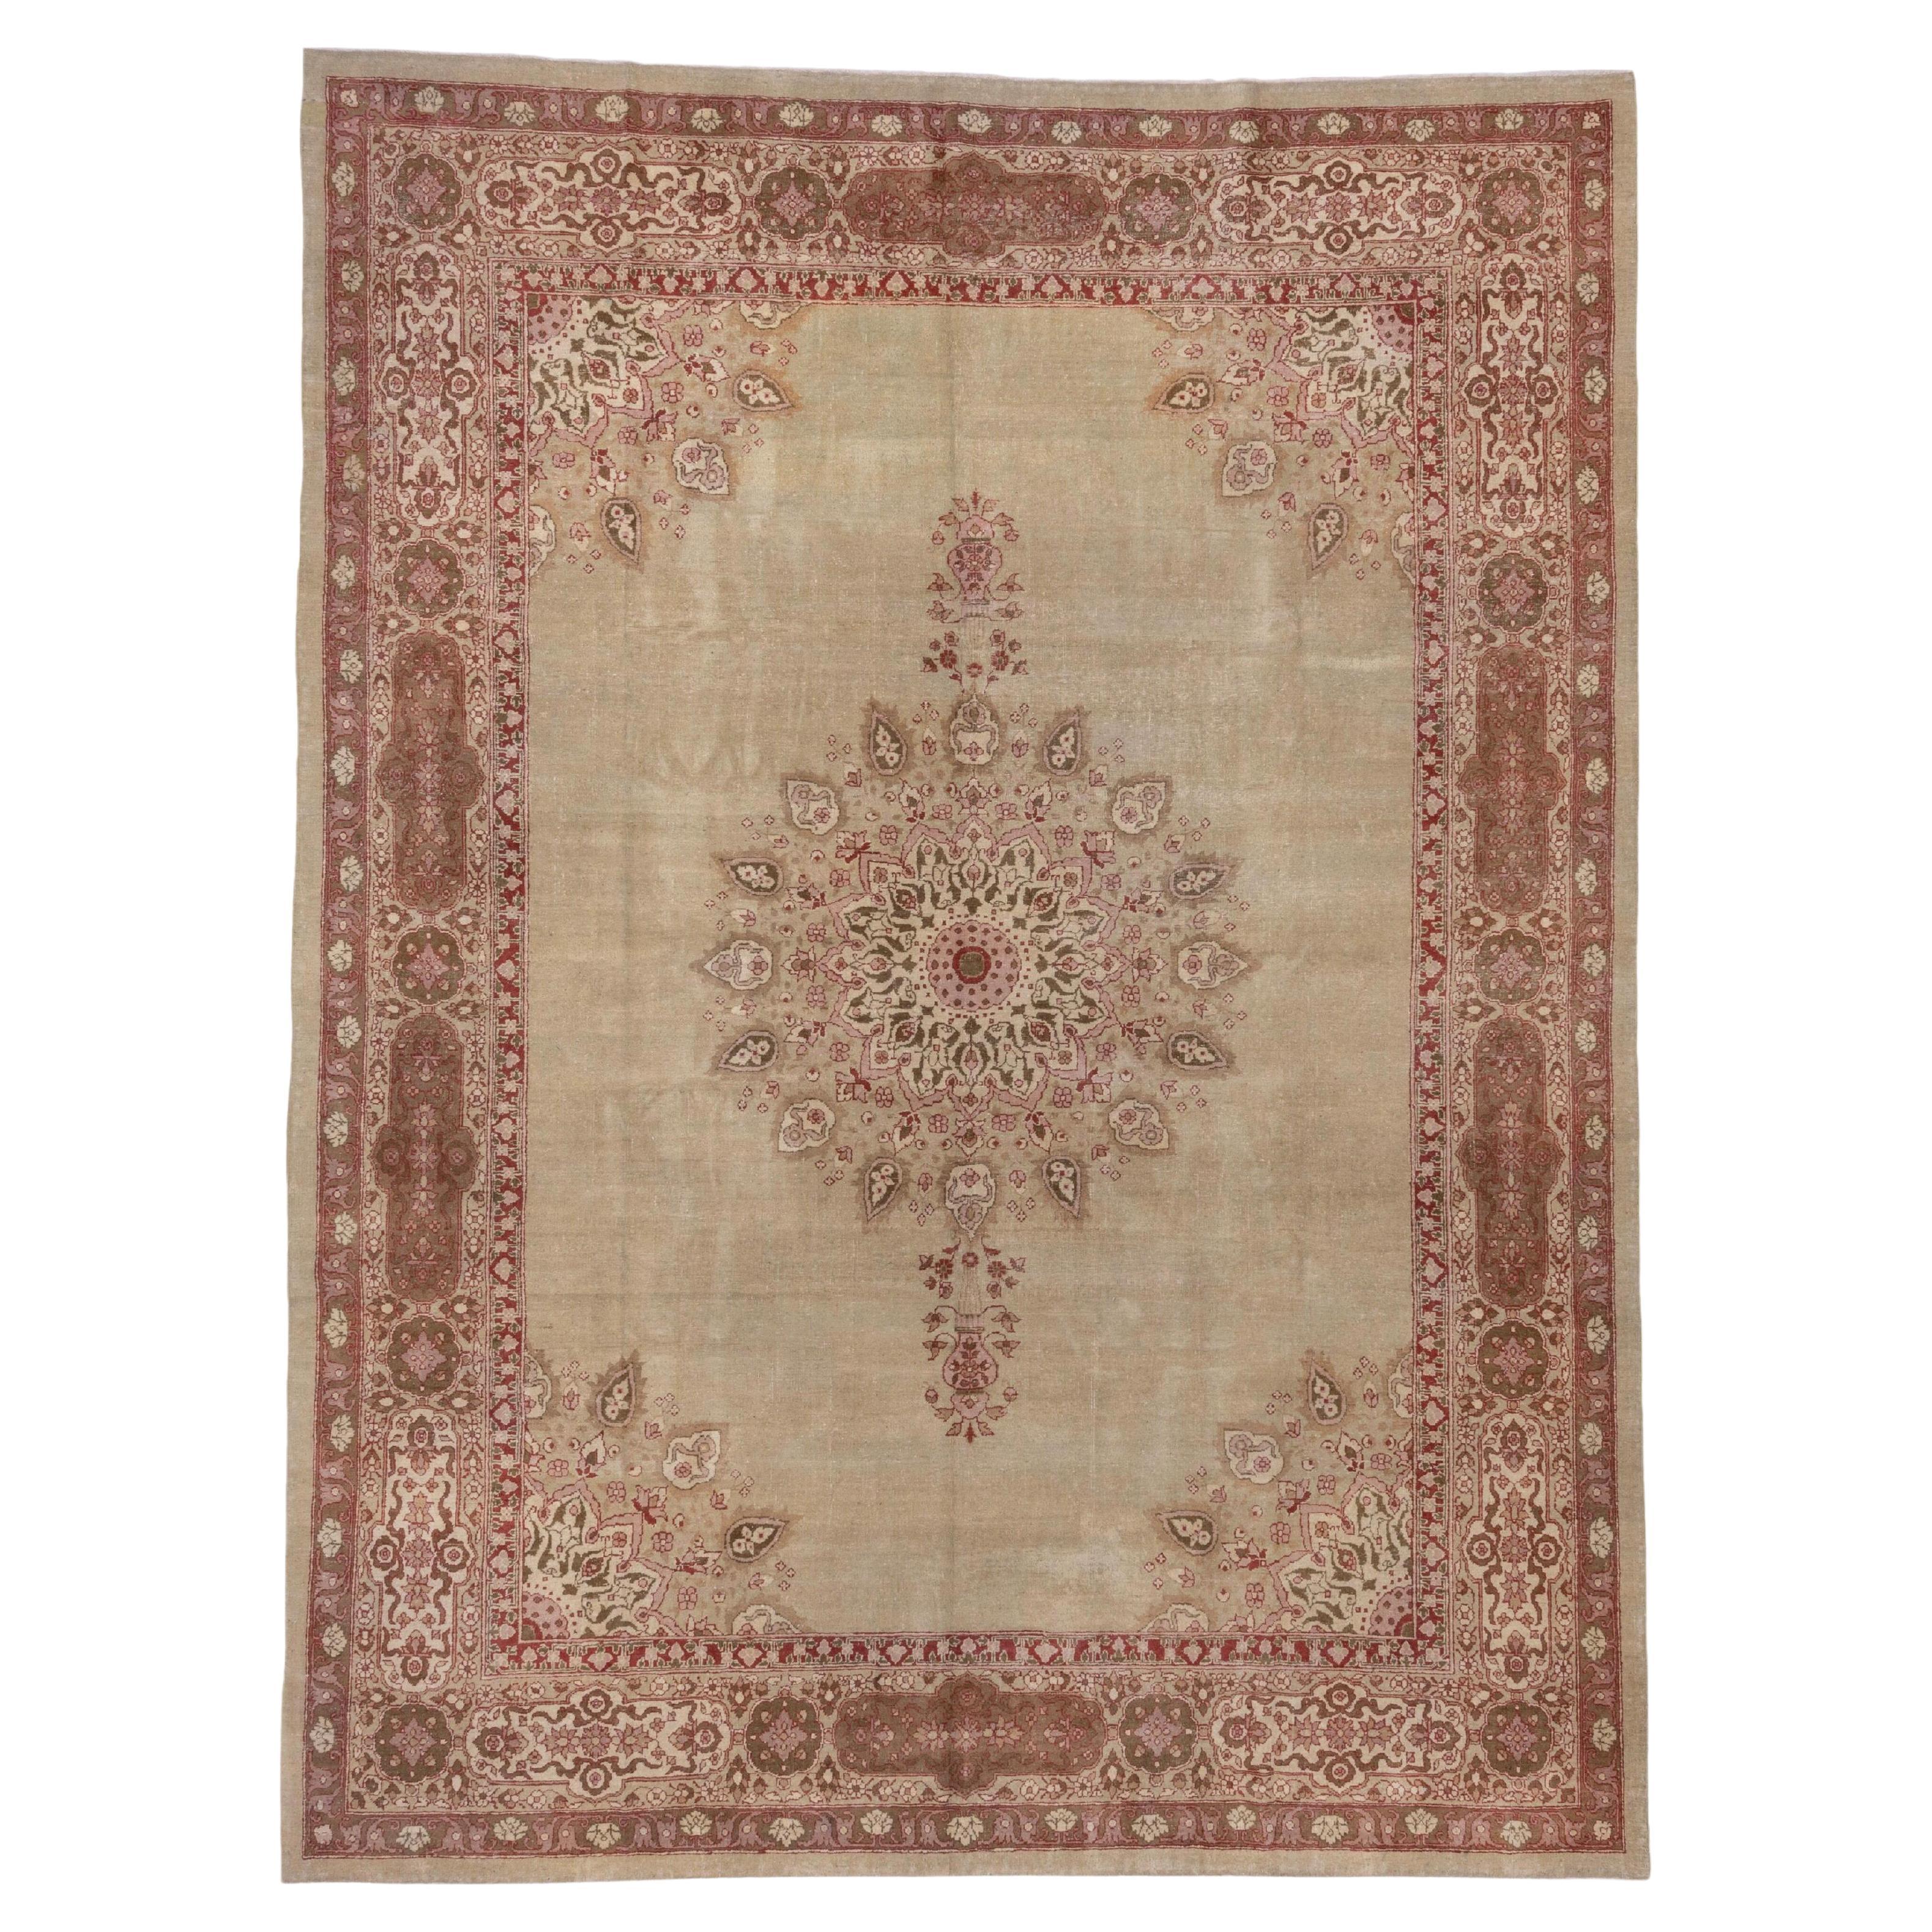 Antique Indian Amritzar Carpet, circa 1920s